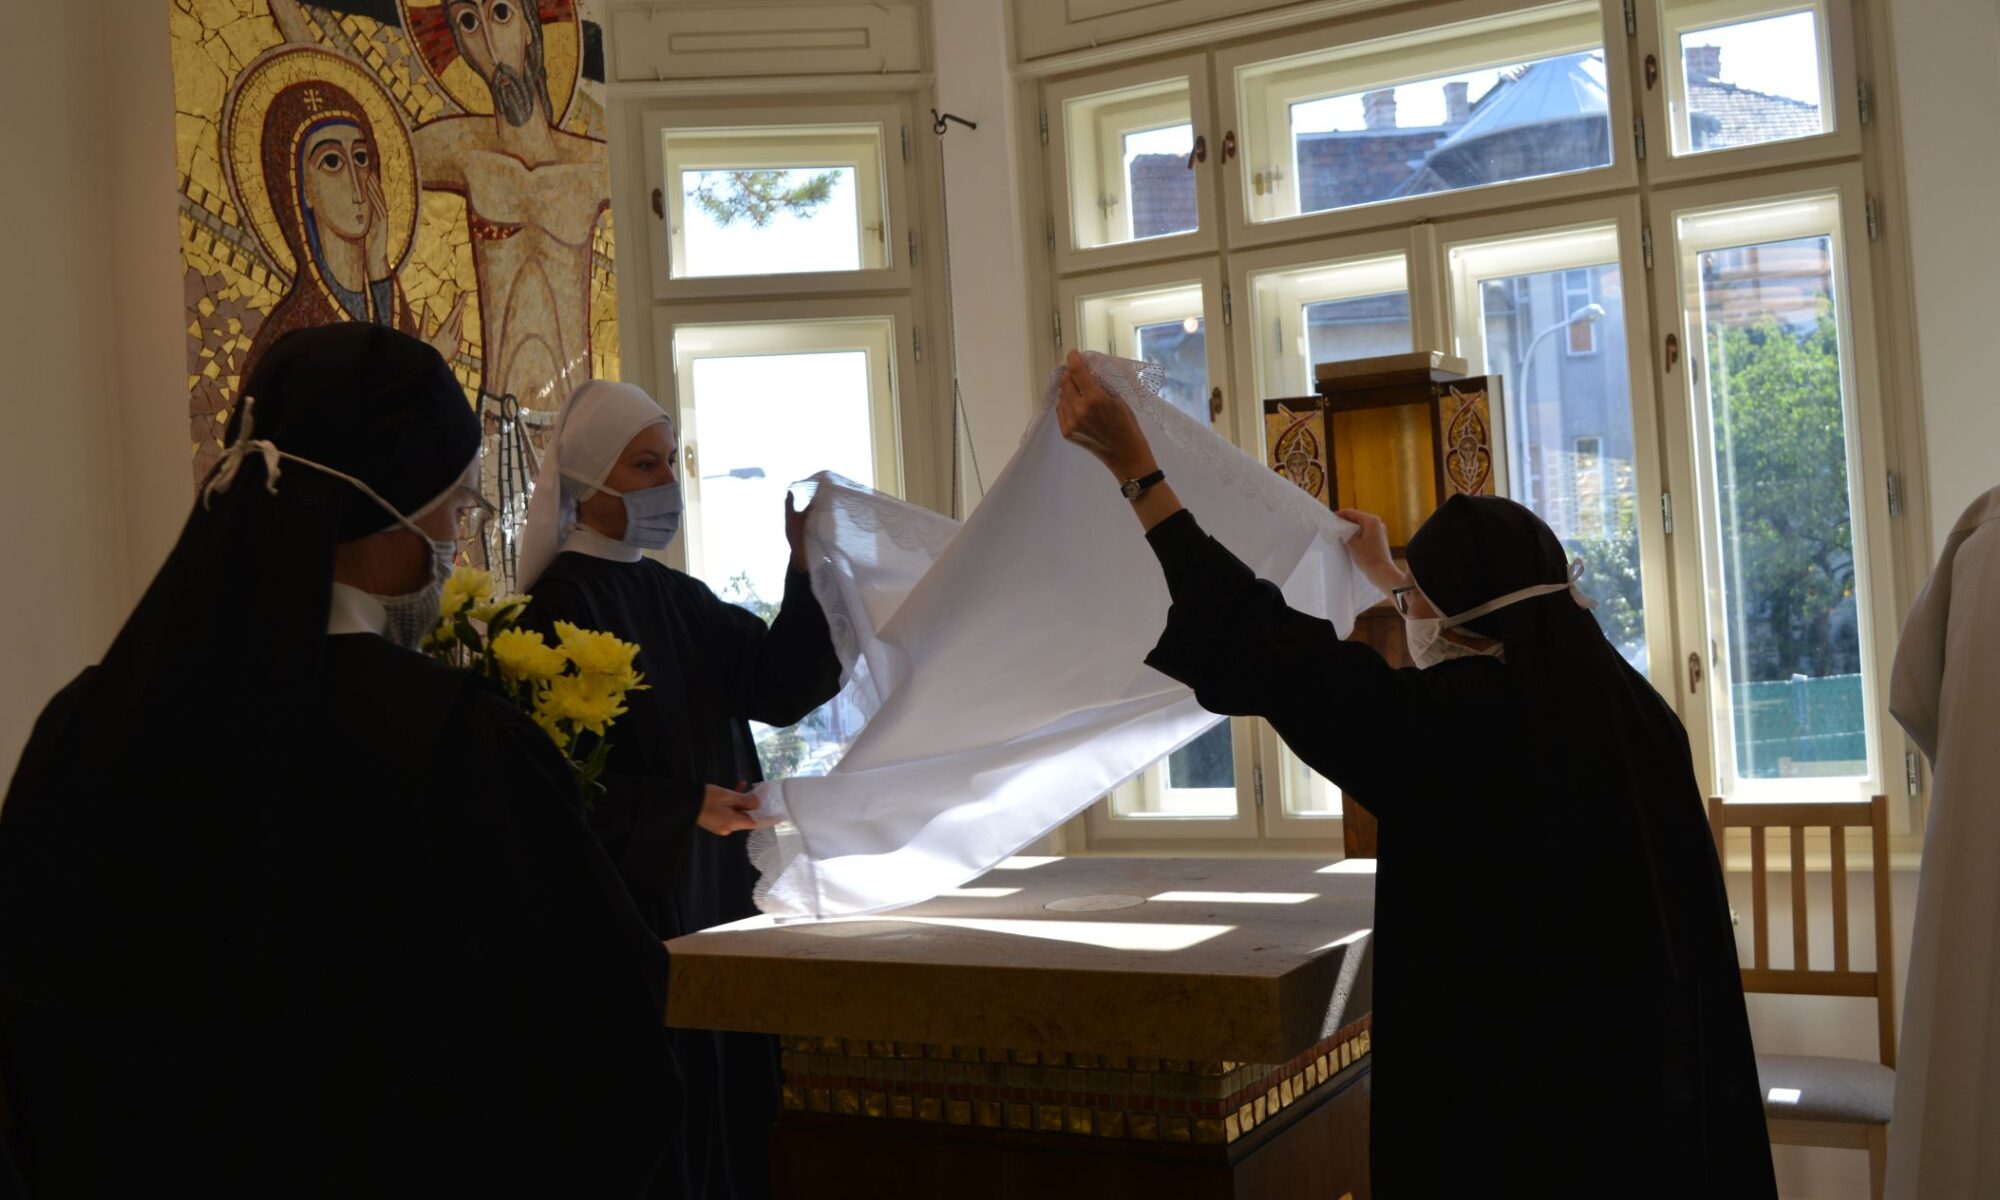 Položení liturgických rouch na oltář